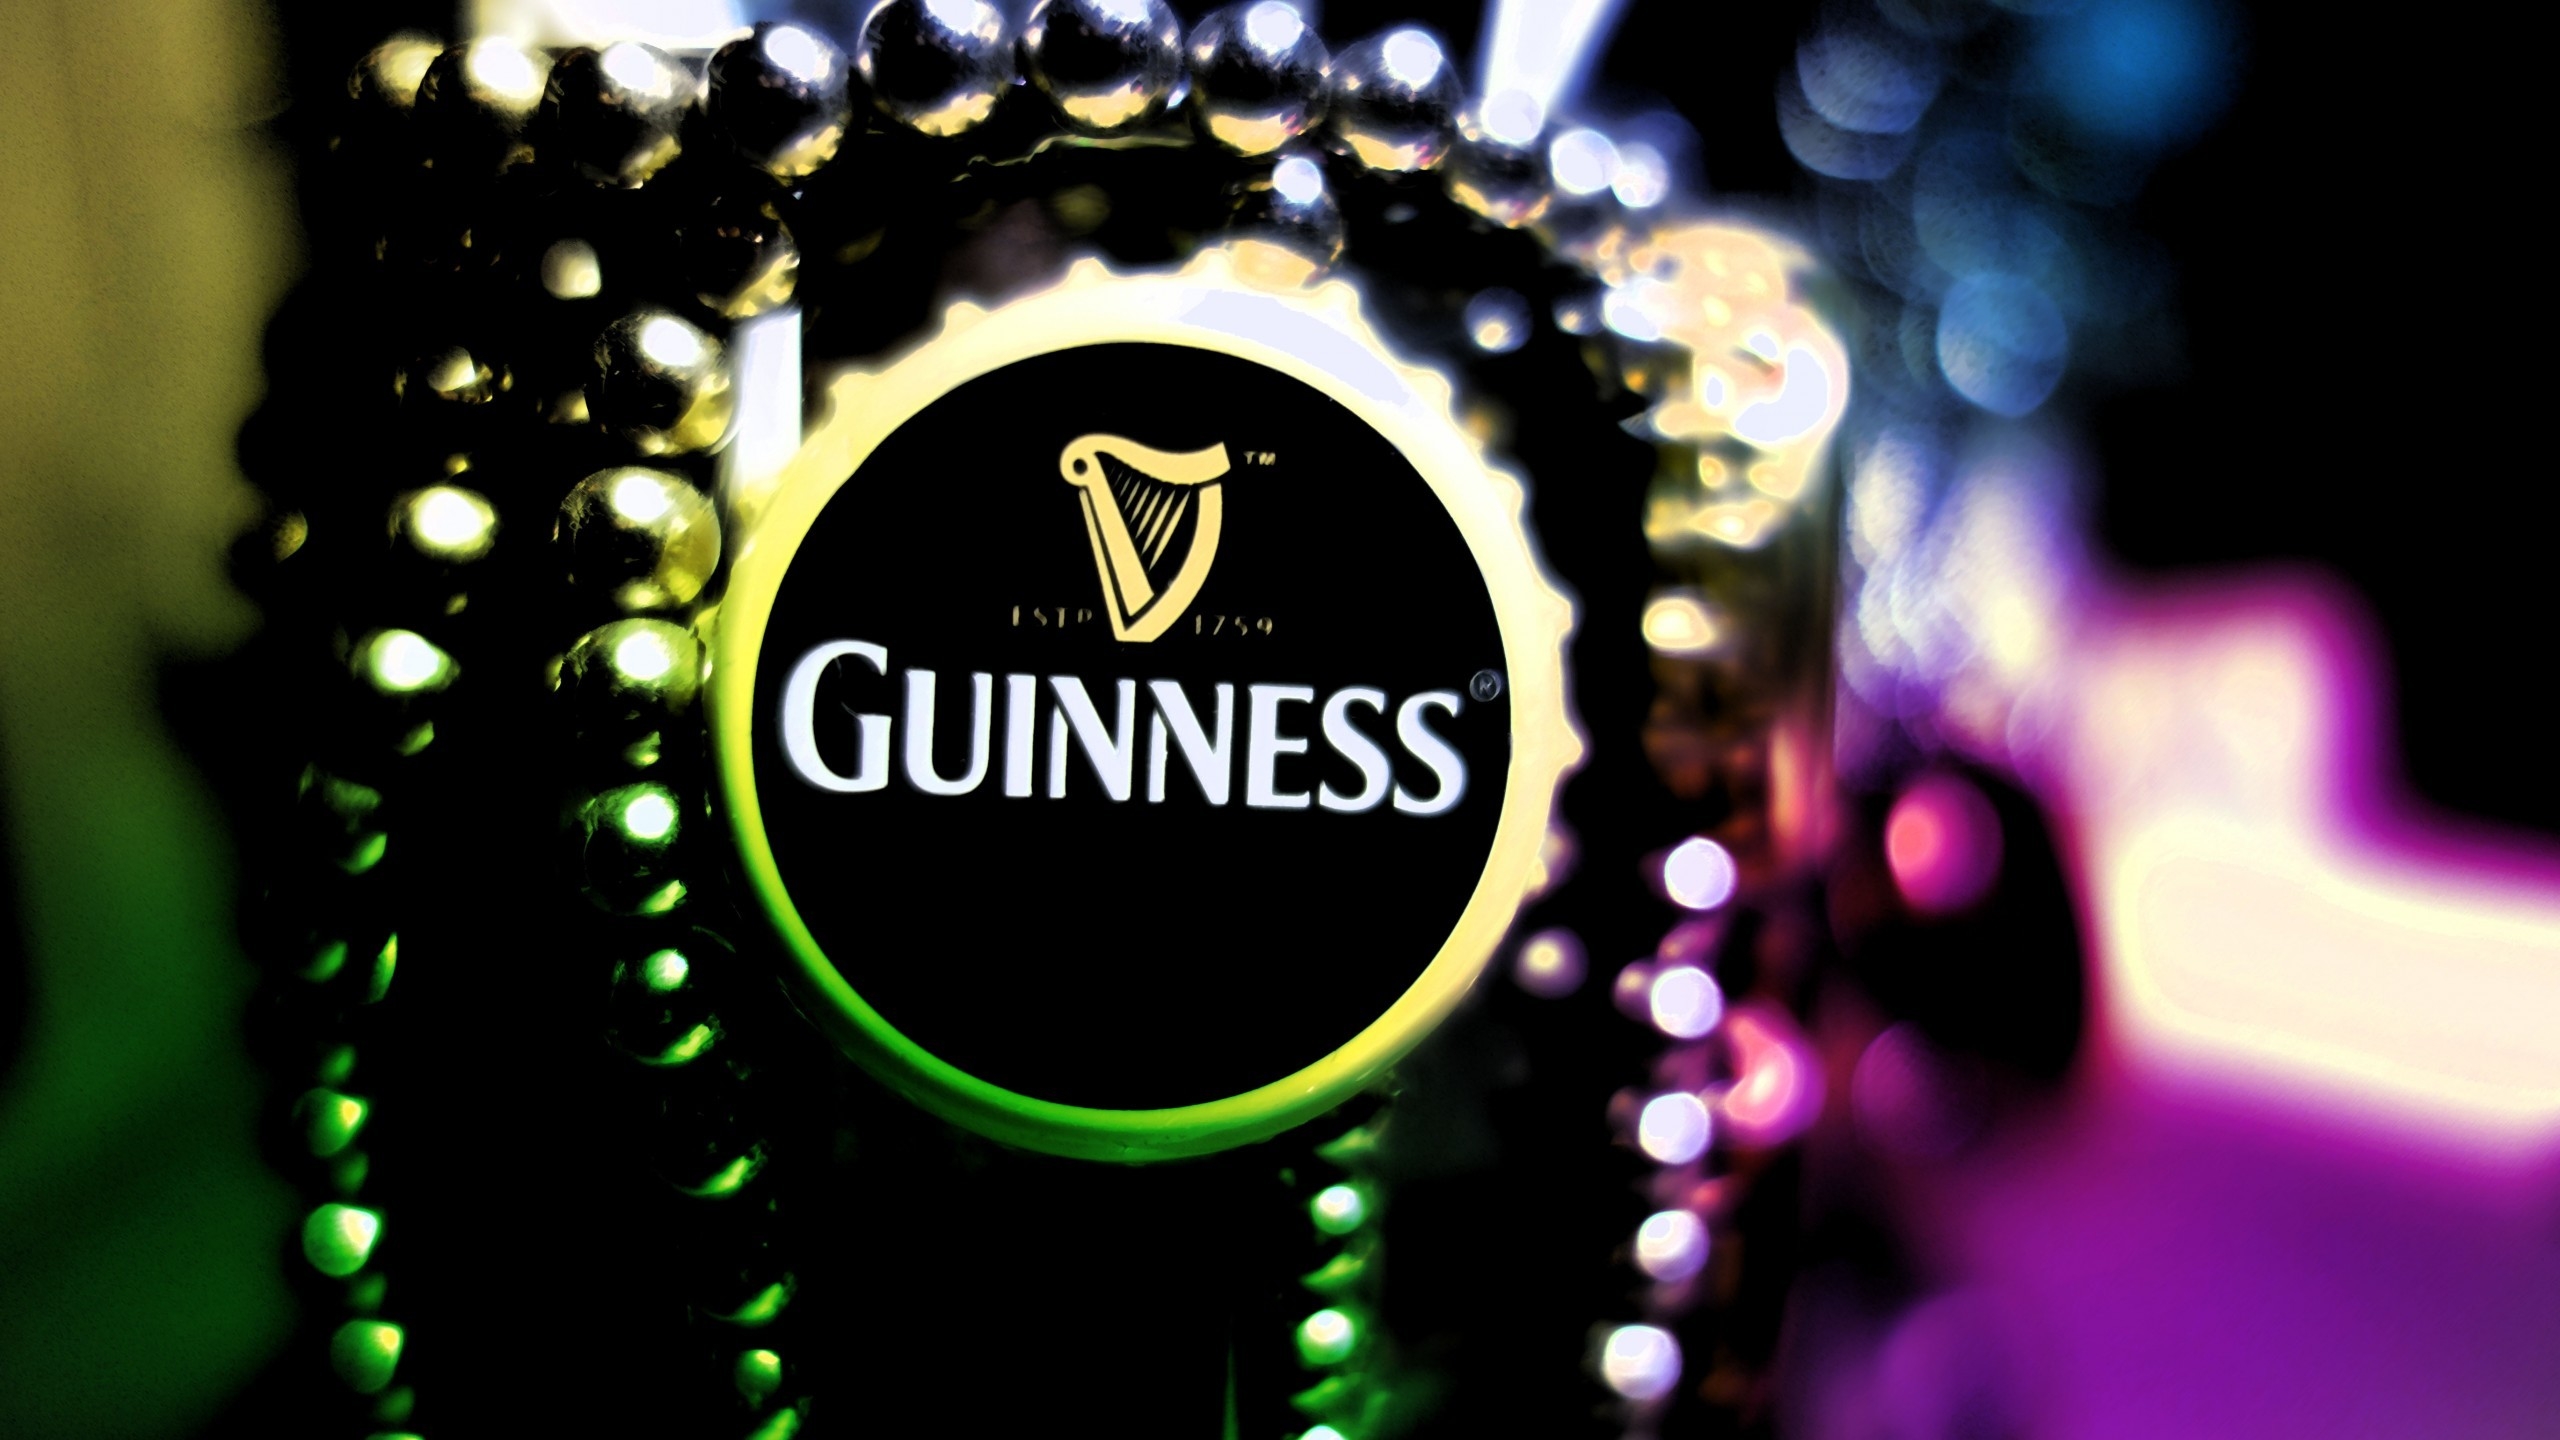 Guinness Logo for 2560x1440 HDTV resolution